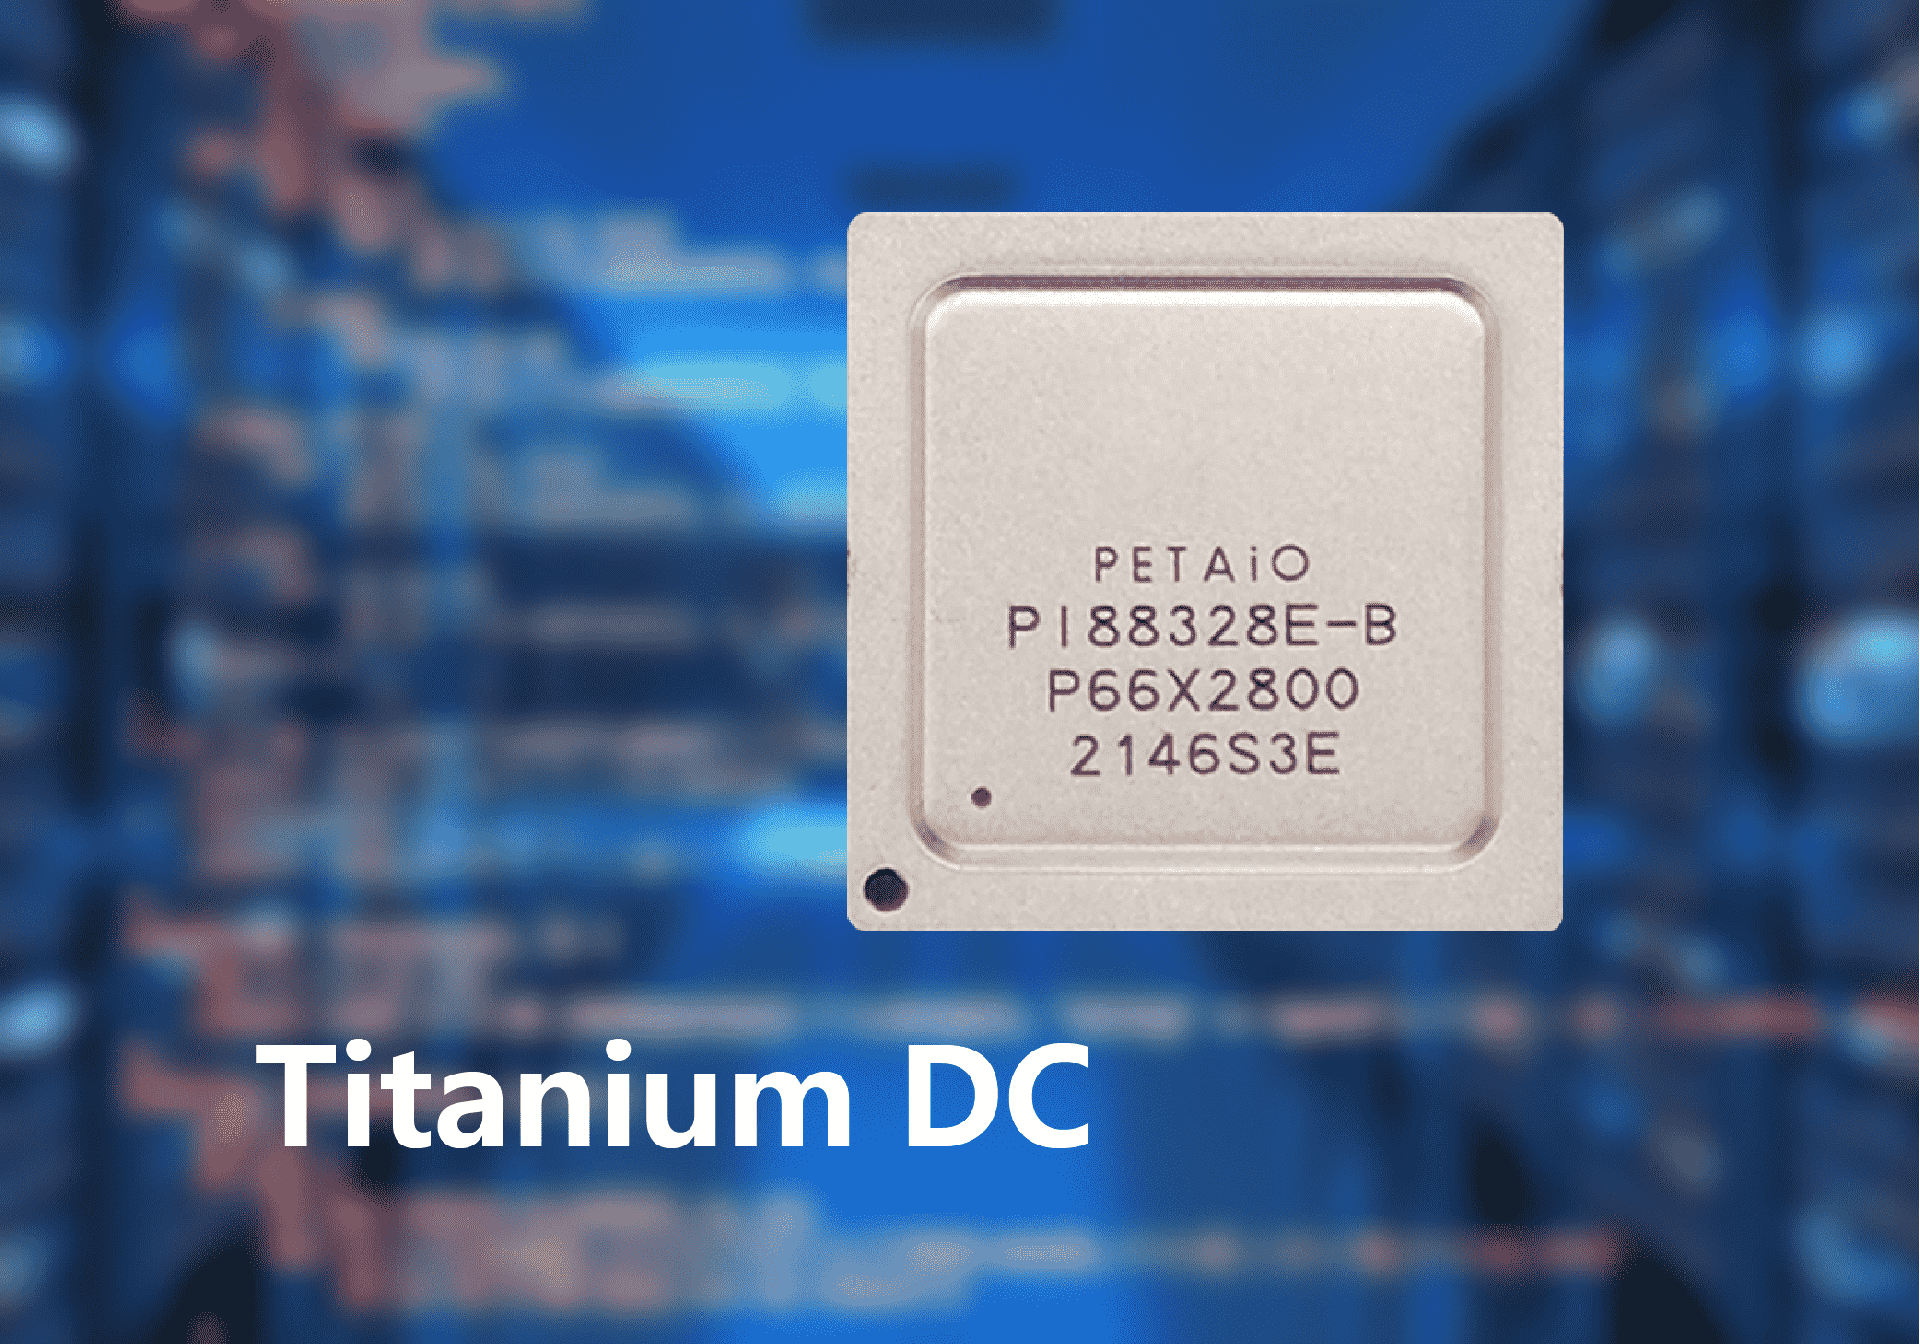 鹏钛存储自研主控芯片 Titanium-DC 的核心优势